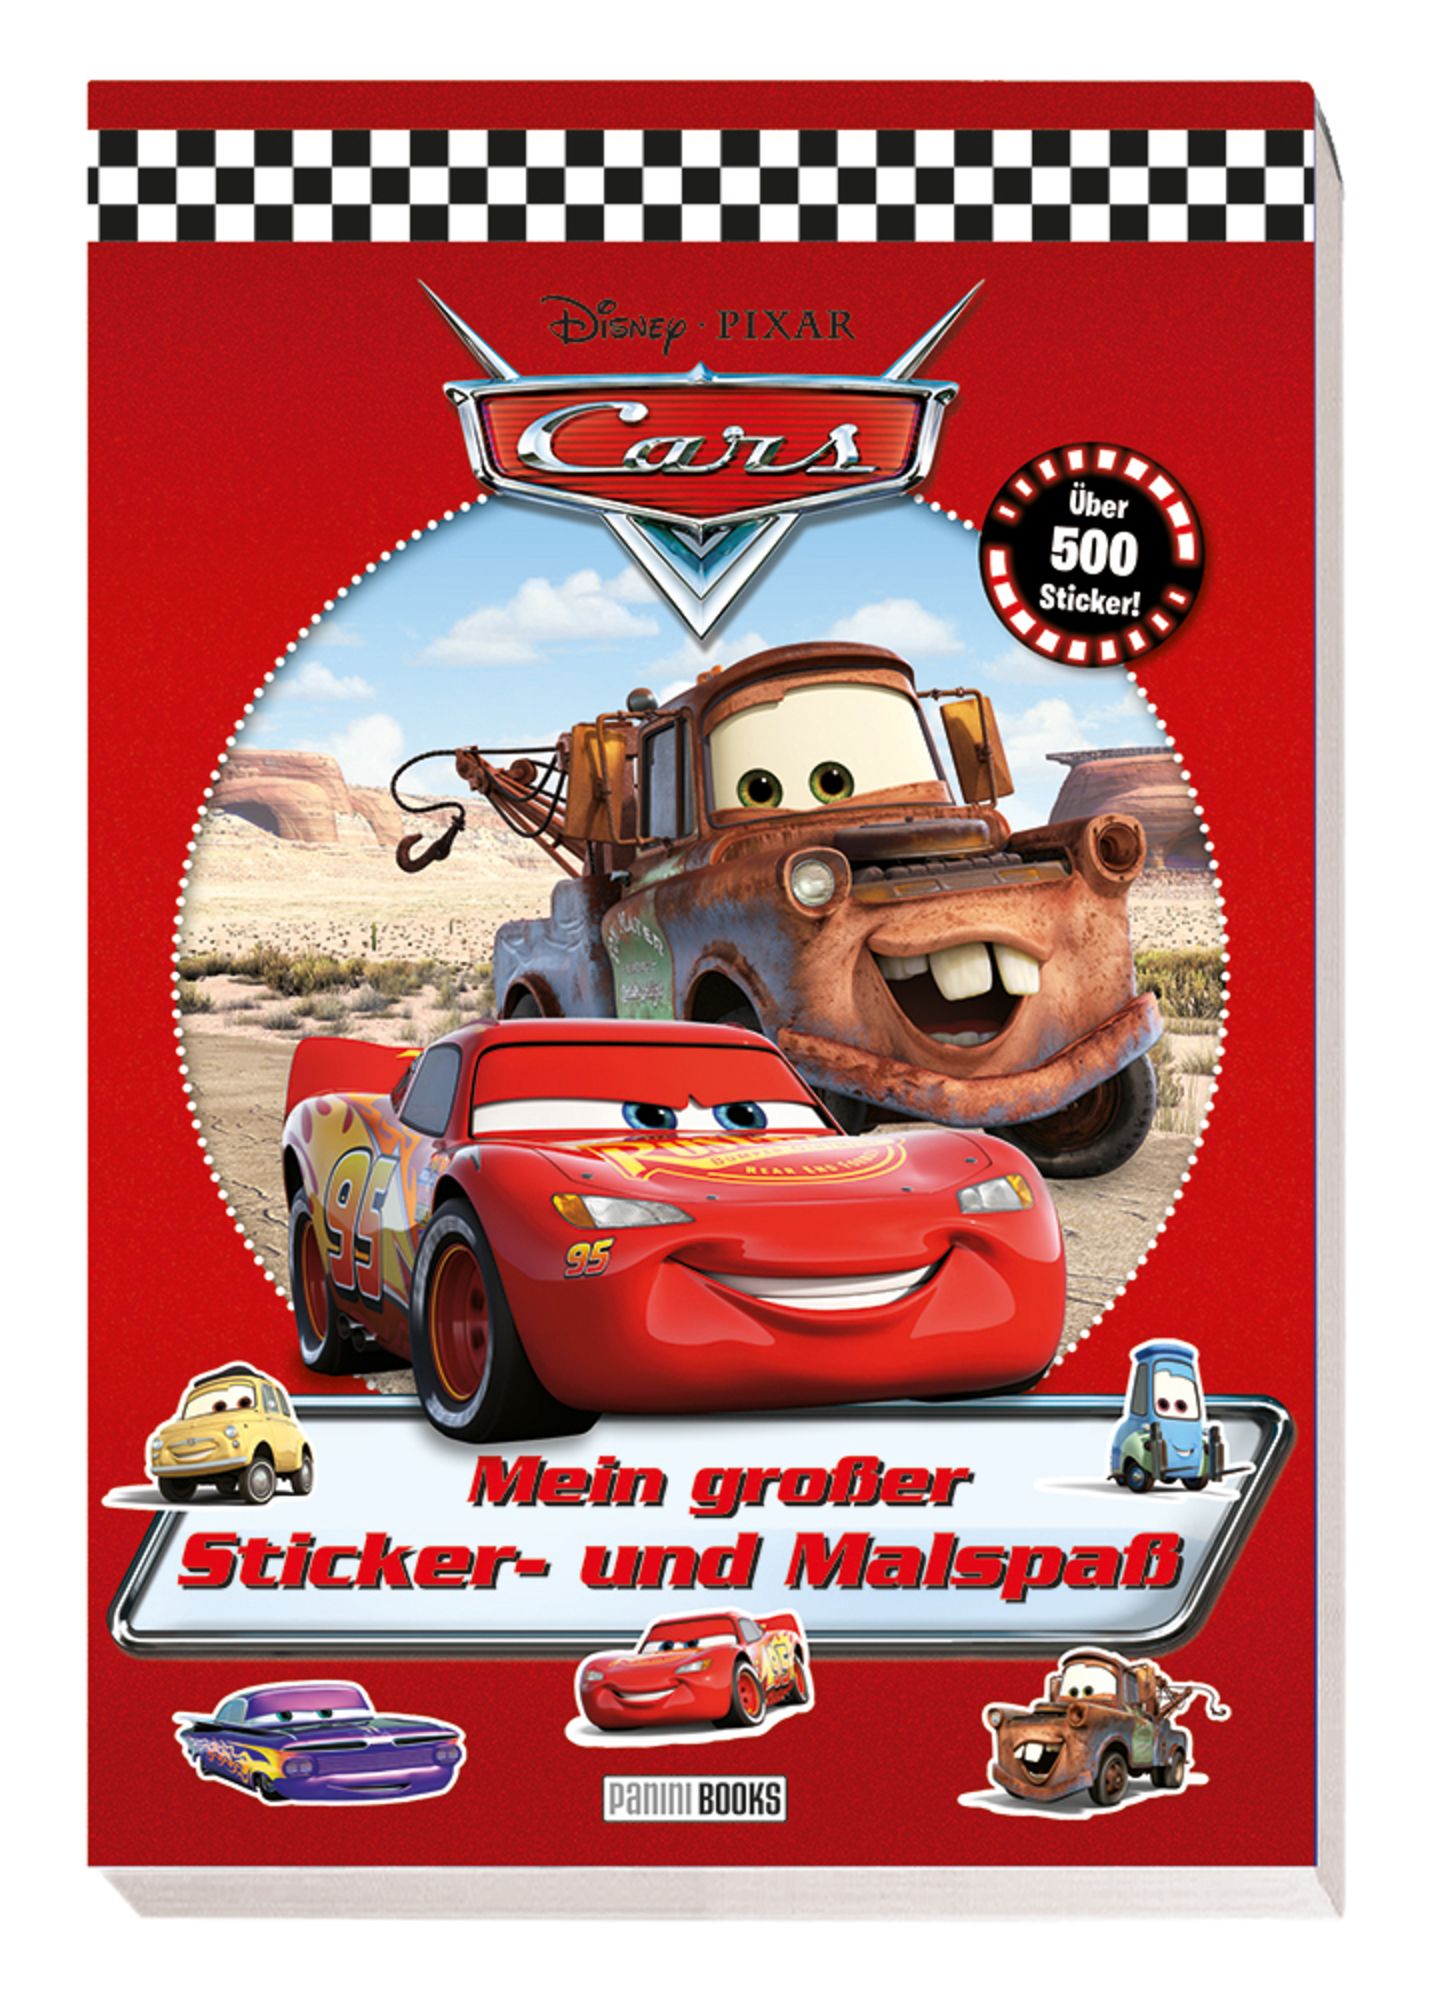 https://images.thalia.media/-/BF2000-2000/09547b64c0ce4dd4bd4775d961af17be/disney-pixar-cars-mein-grosser-sticker-und-malspass-taschenbuch-panini.jpeg